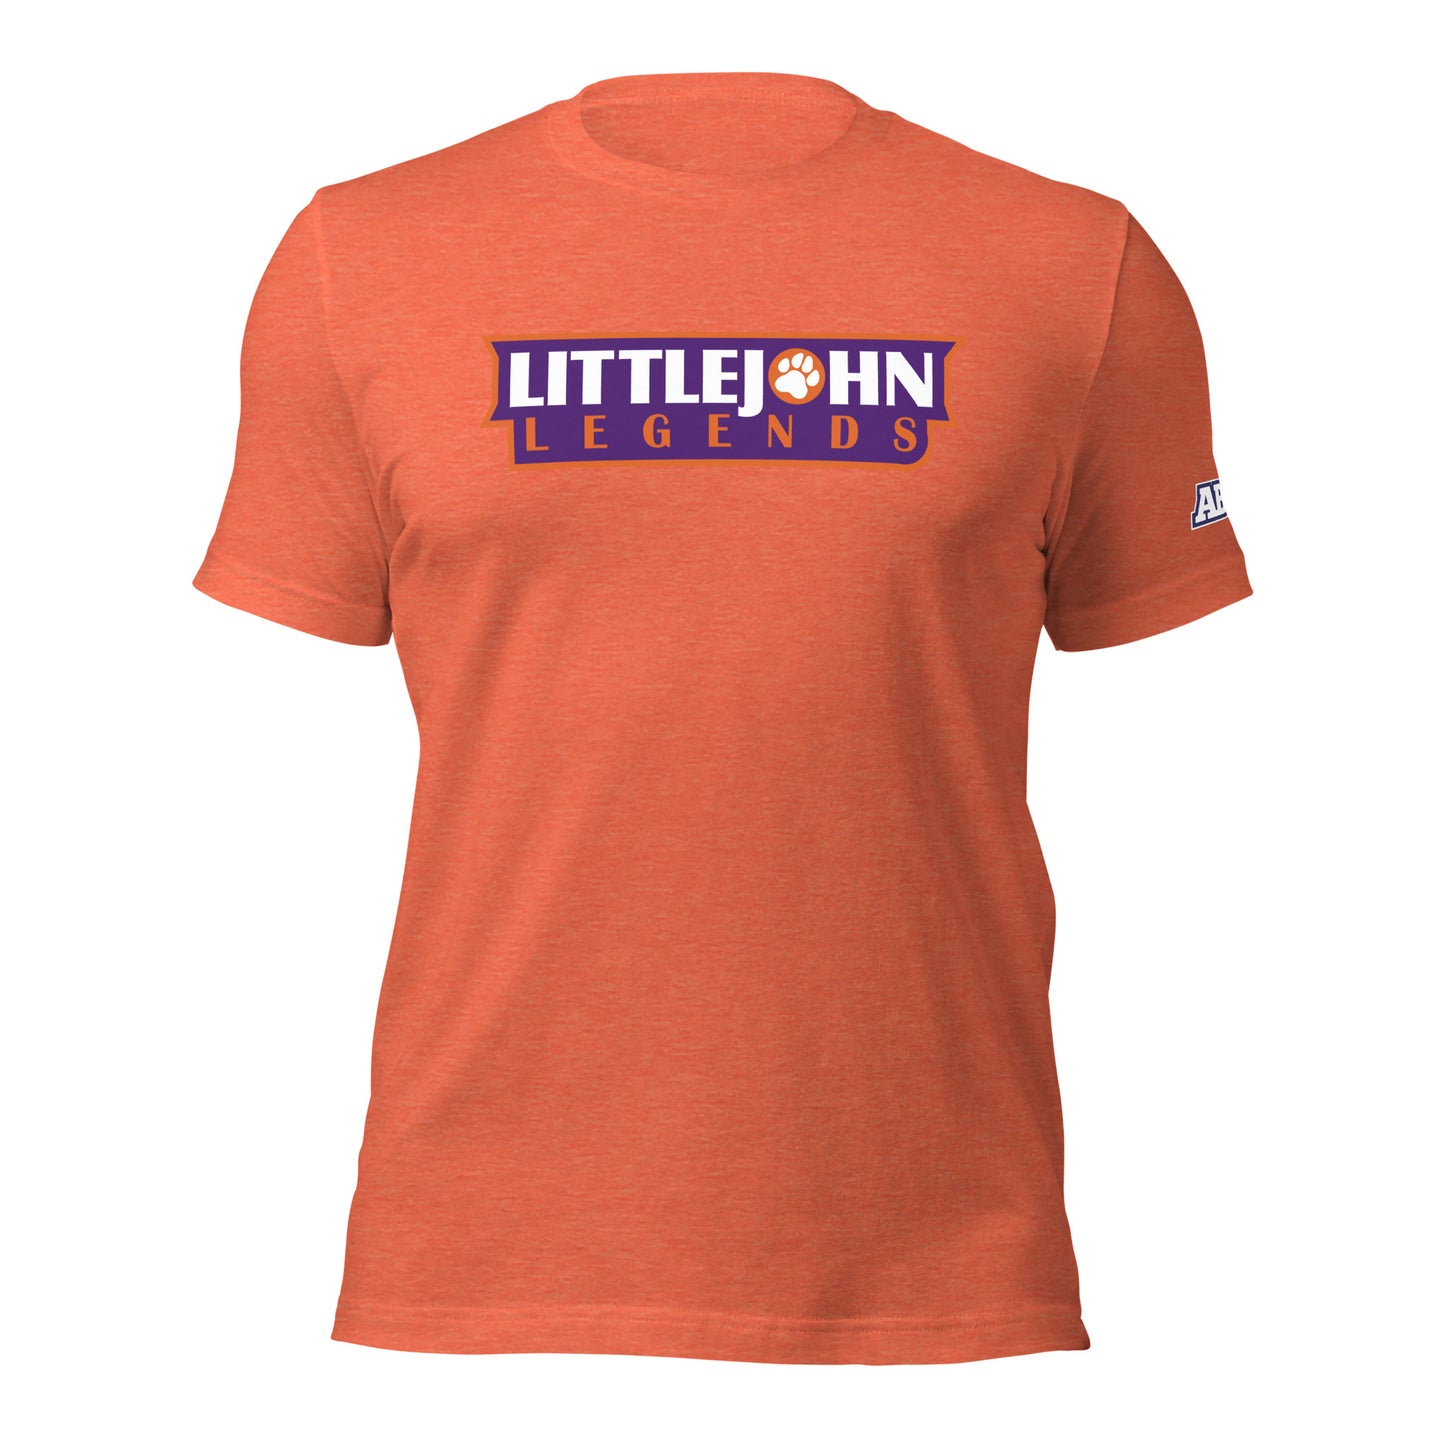 LITTLEJOHN LEGENDS t-shirt